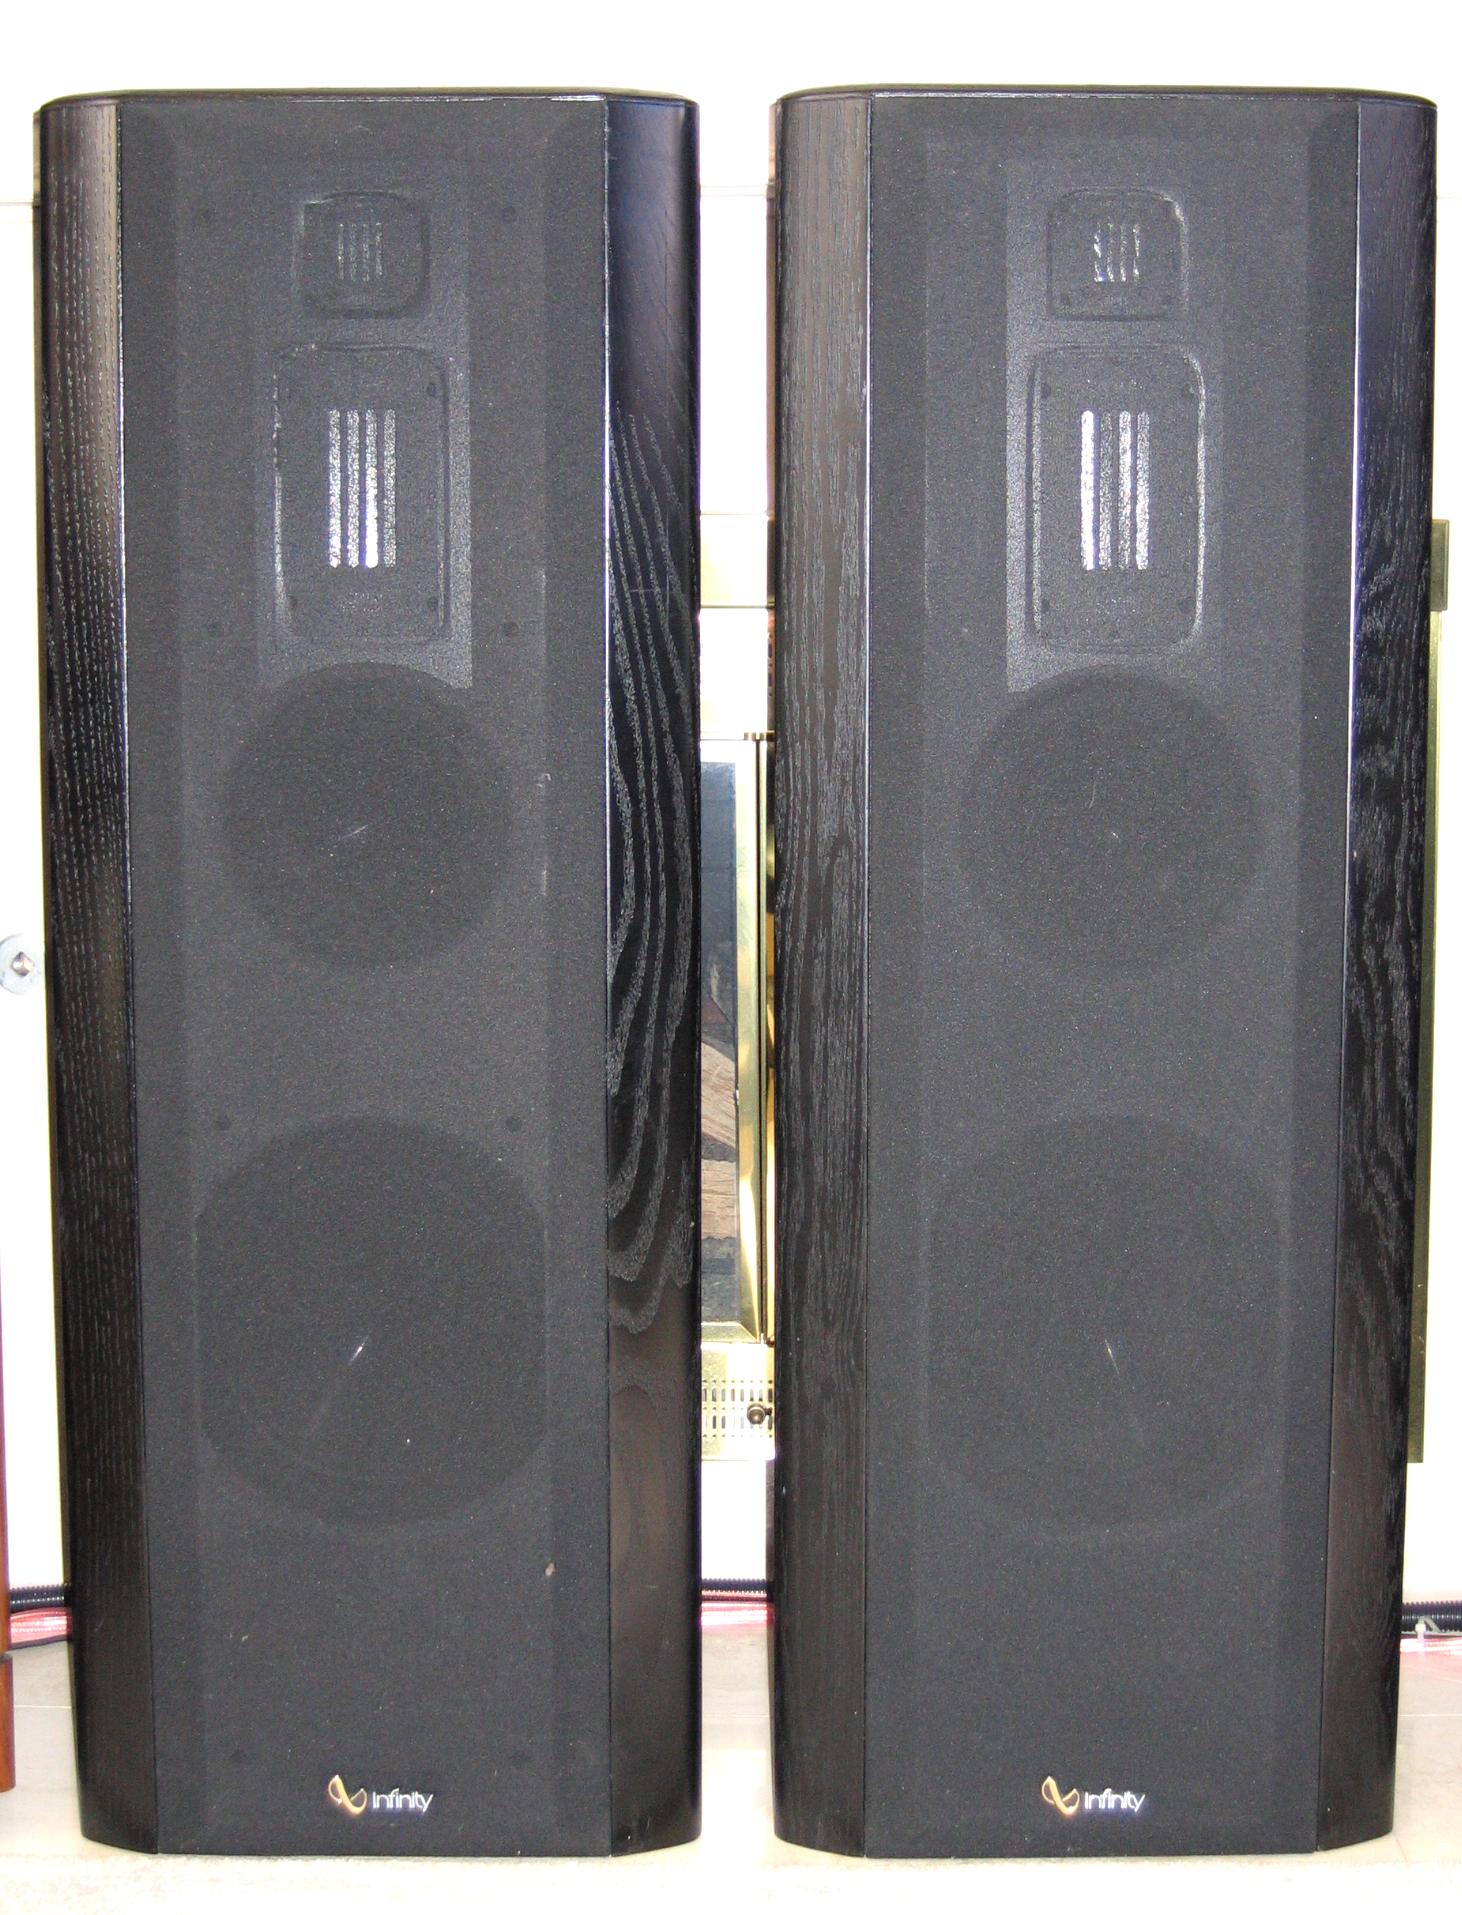 vintage infinity speakers for sale